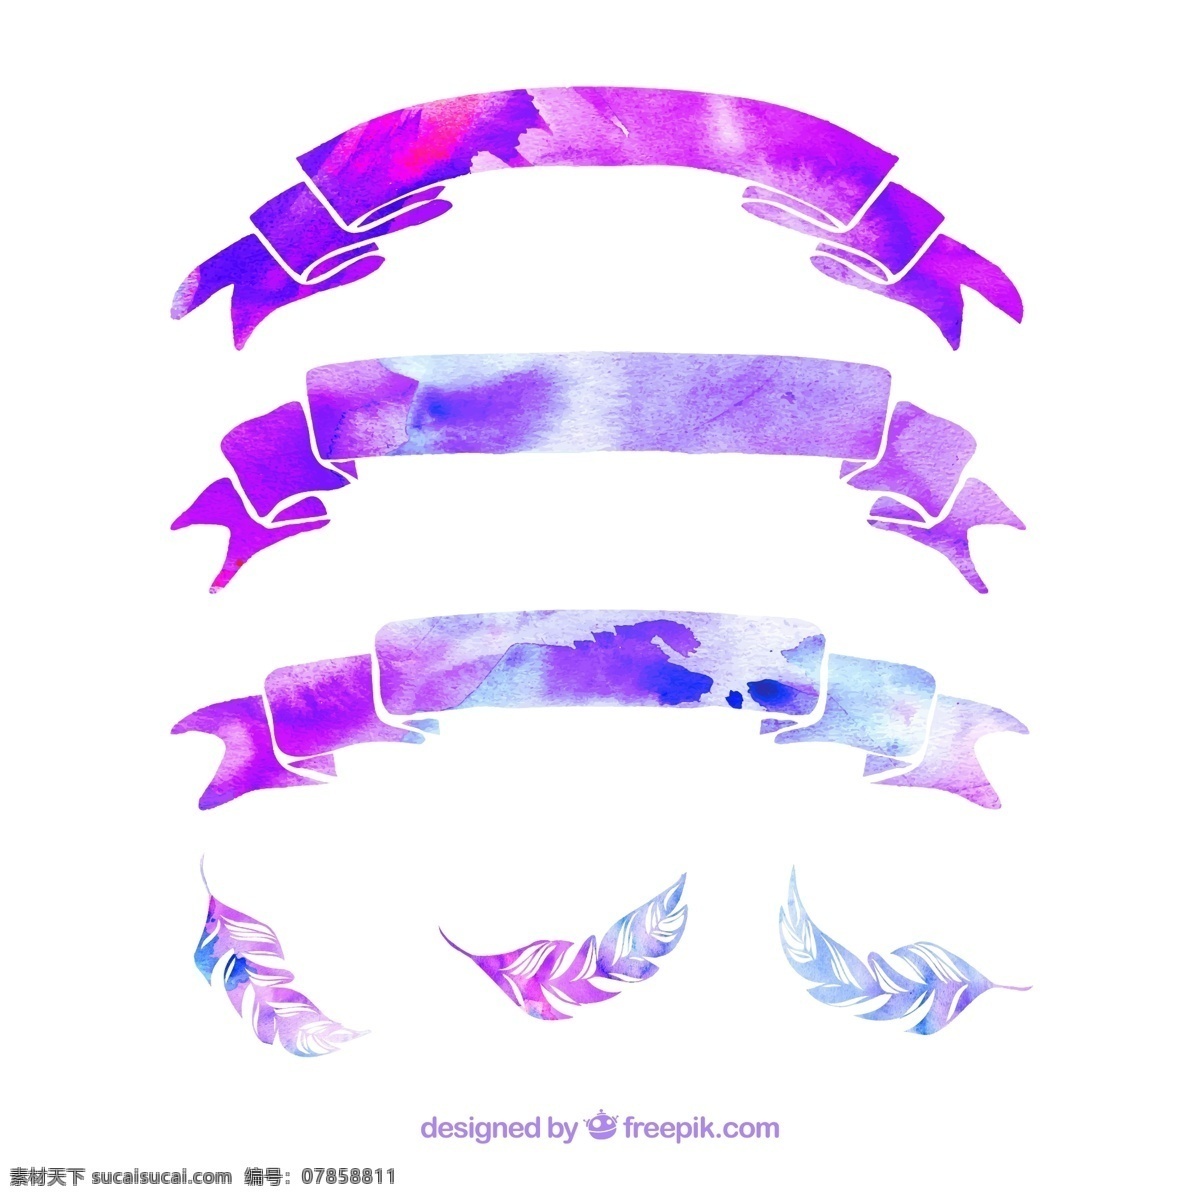 夢 幻 矢量 圖 花 紋 邊 設 計 花紋 緞帶 羽毛 夢幻 紫色 水彩 白色